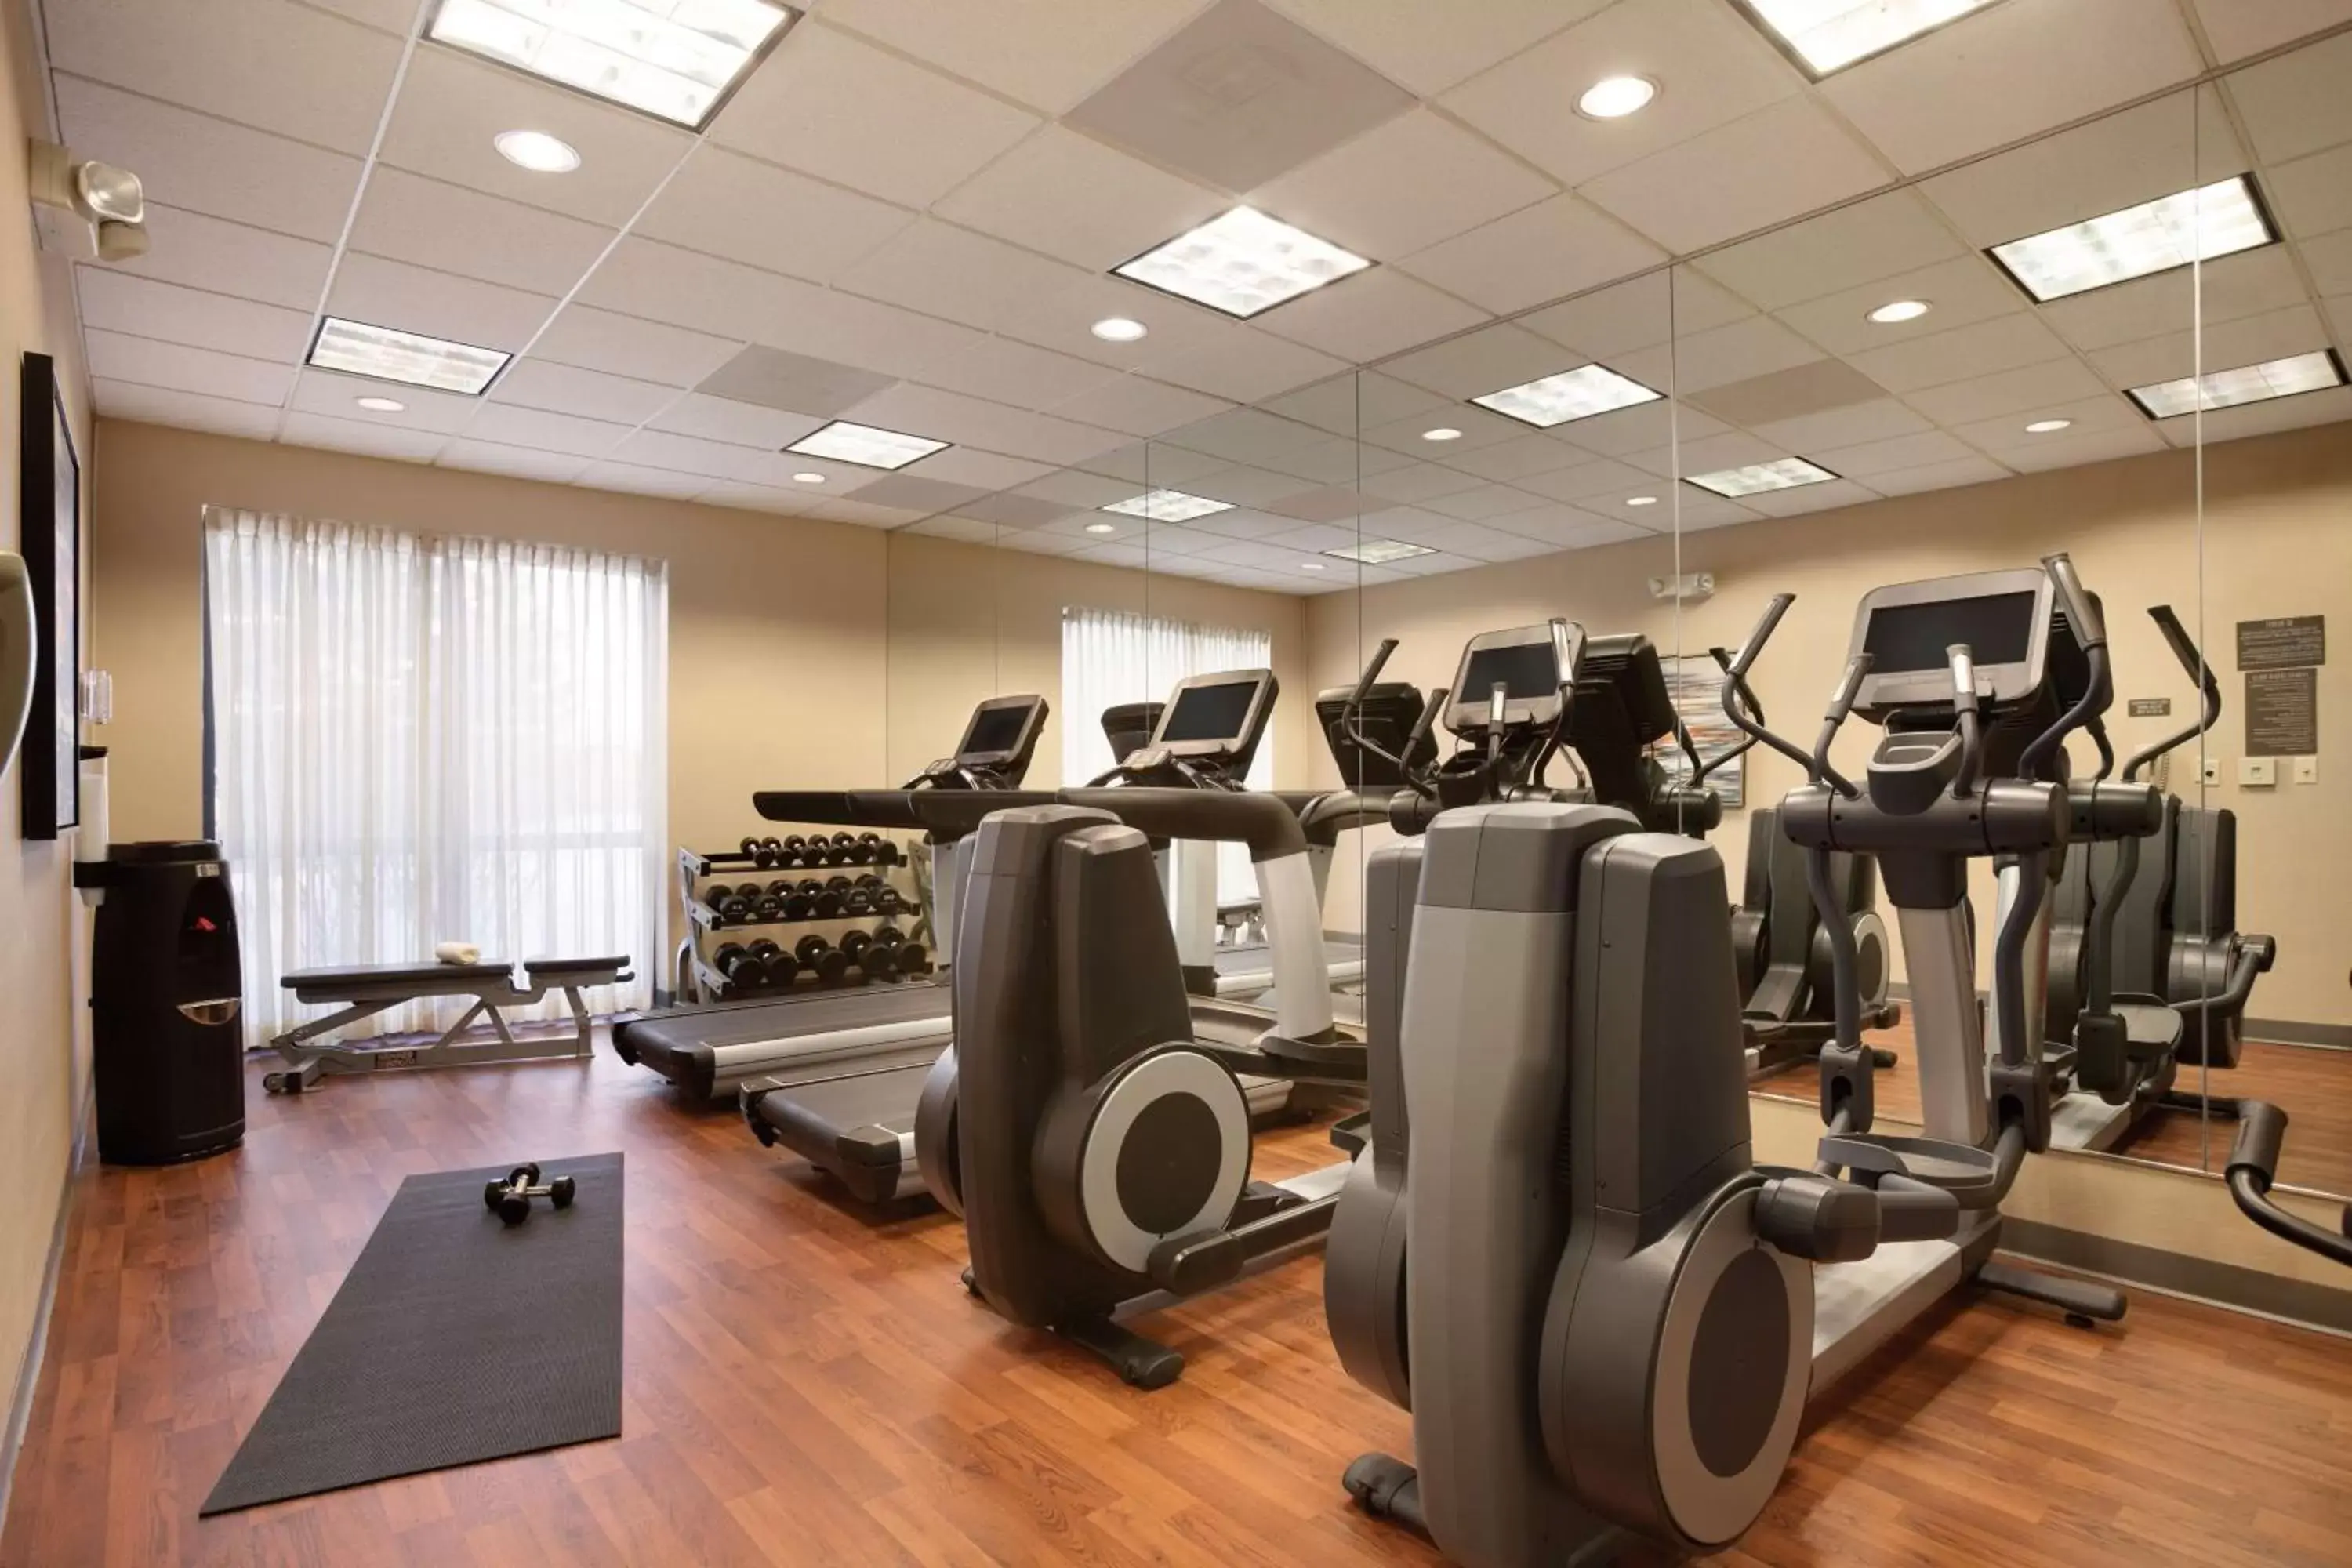 Fitness centre/facilities, Fitness Center/Facilities in Hyatt Place Columbus/Dublin